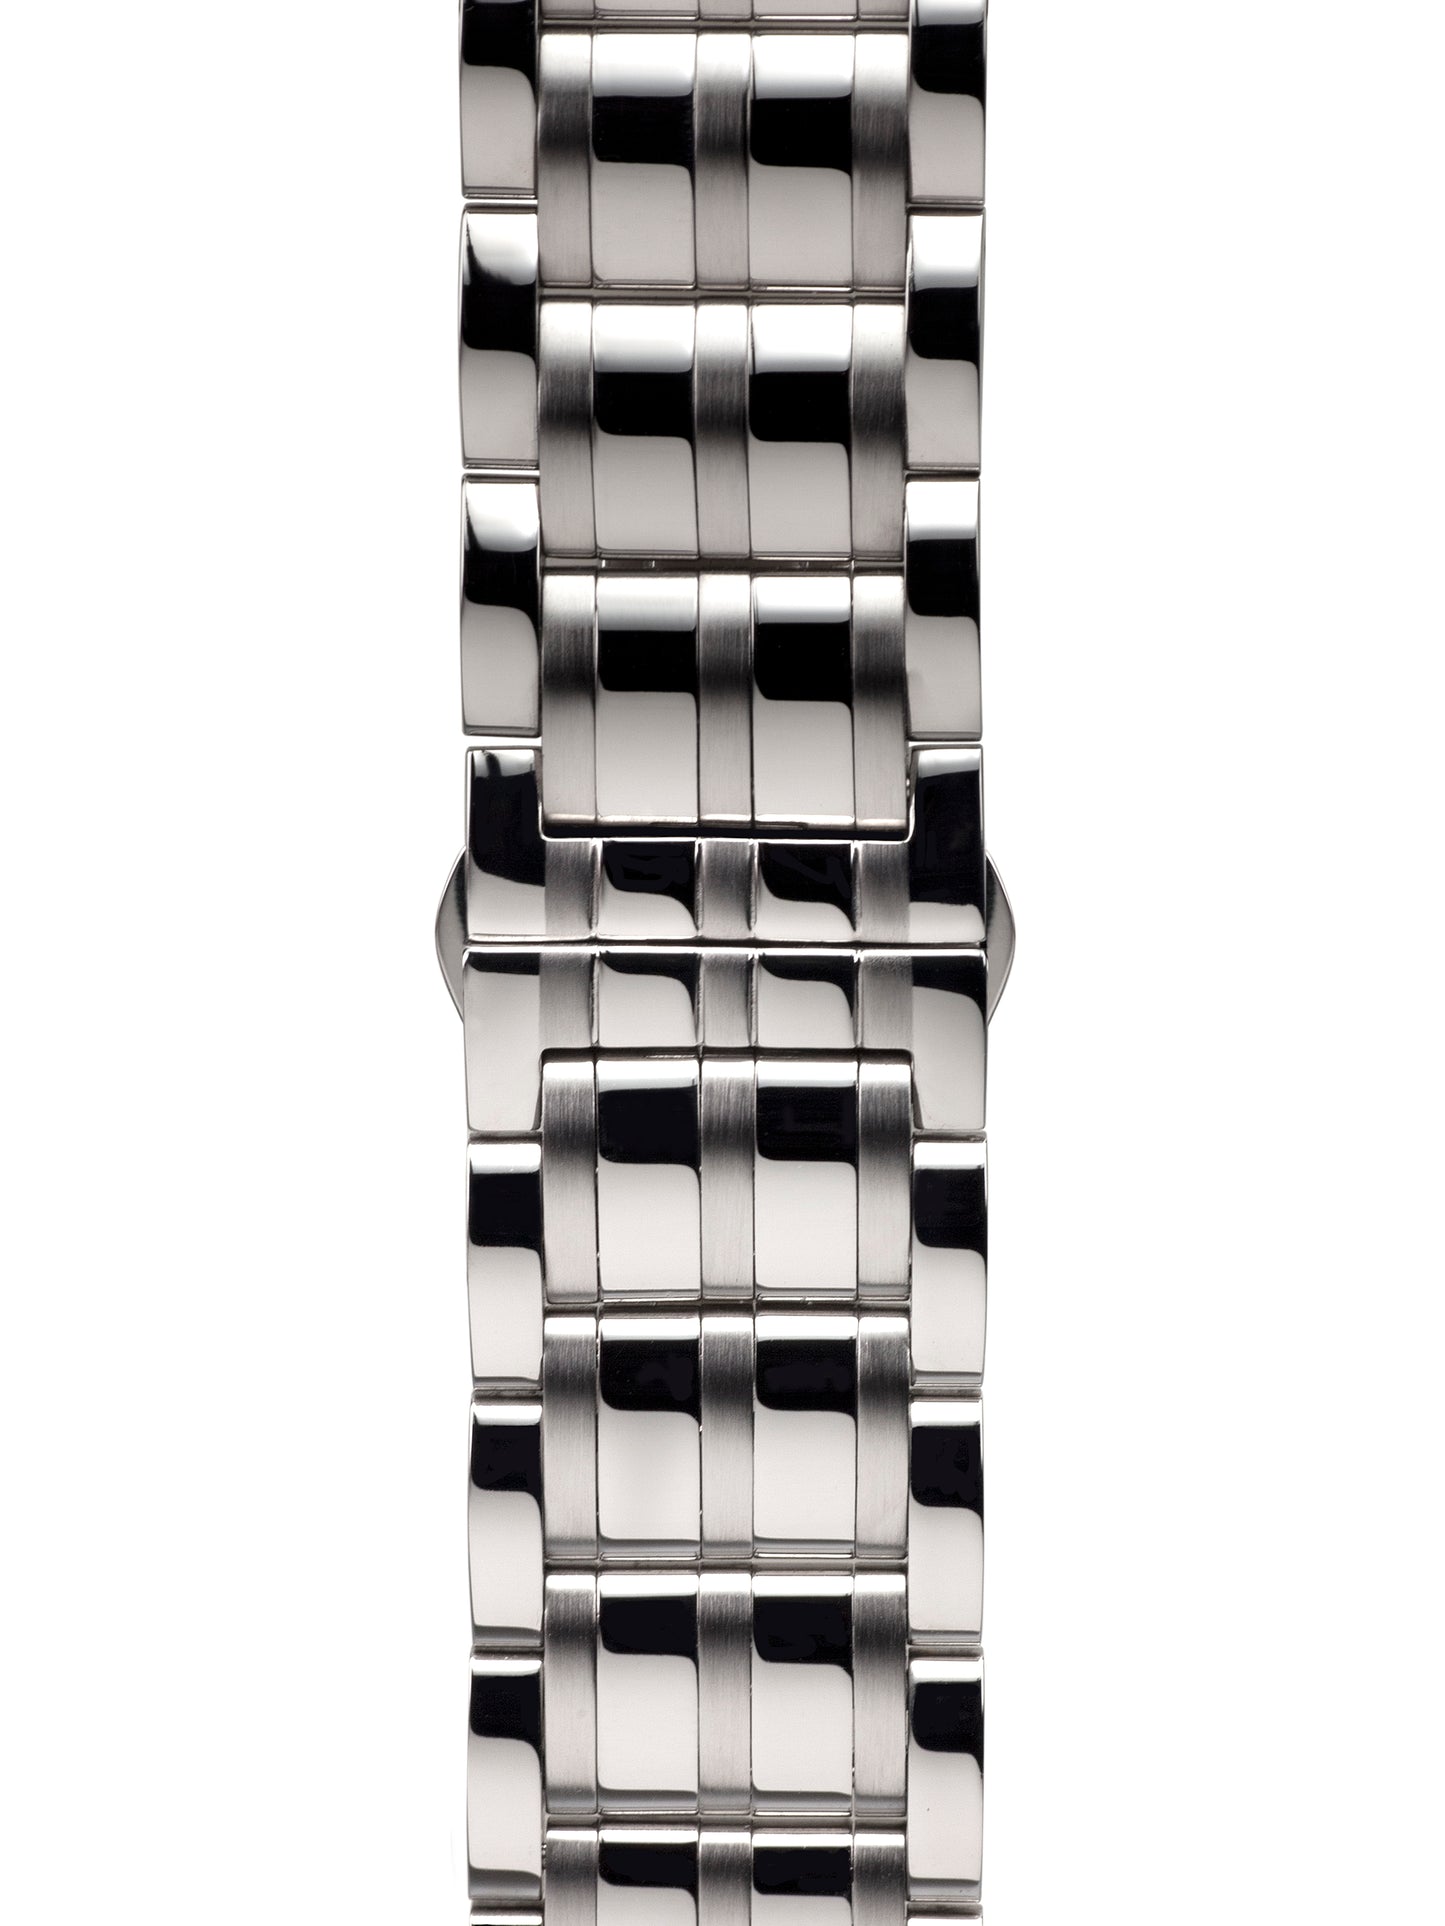 Automatic watches — Apia — Richtenburg — steel silver